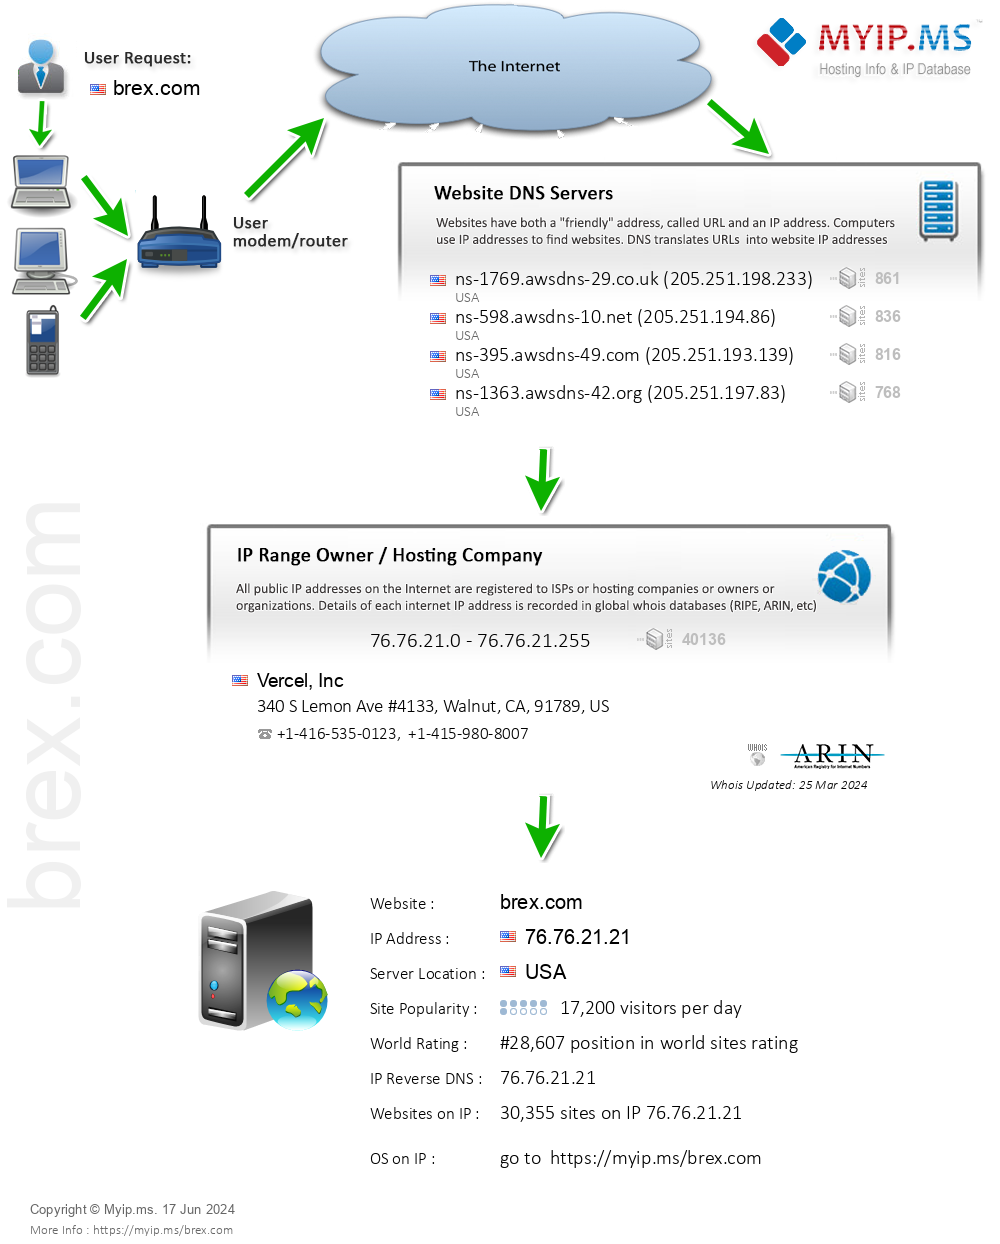 Brex.com - Website Hosting Visual IP Diagram